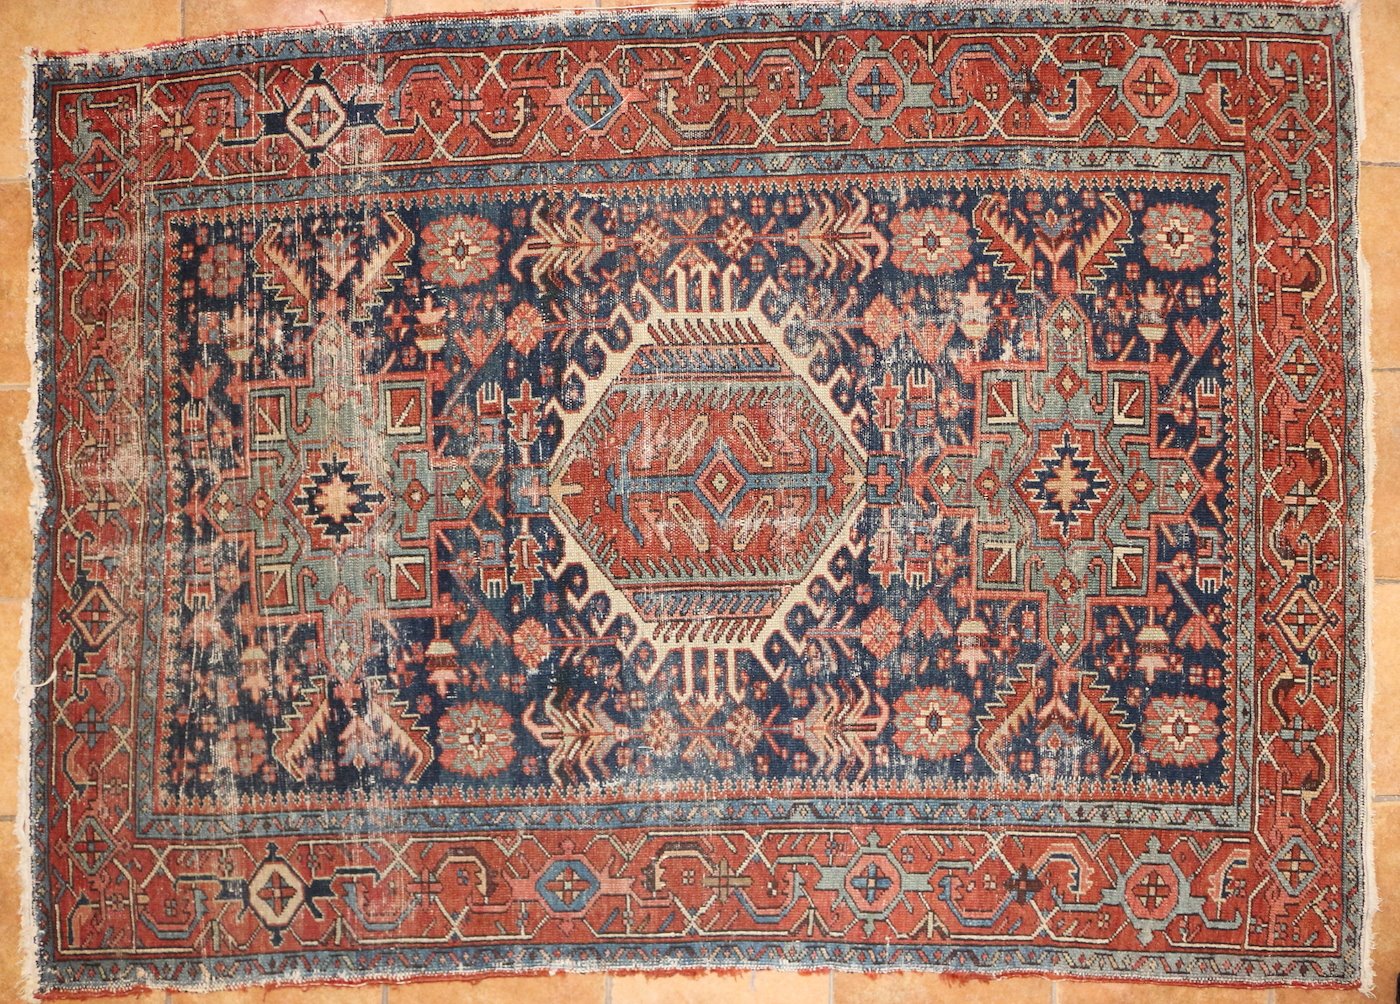 Severozápadní Írán, konec 19. stol. - Perský koberec Heríz